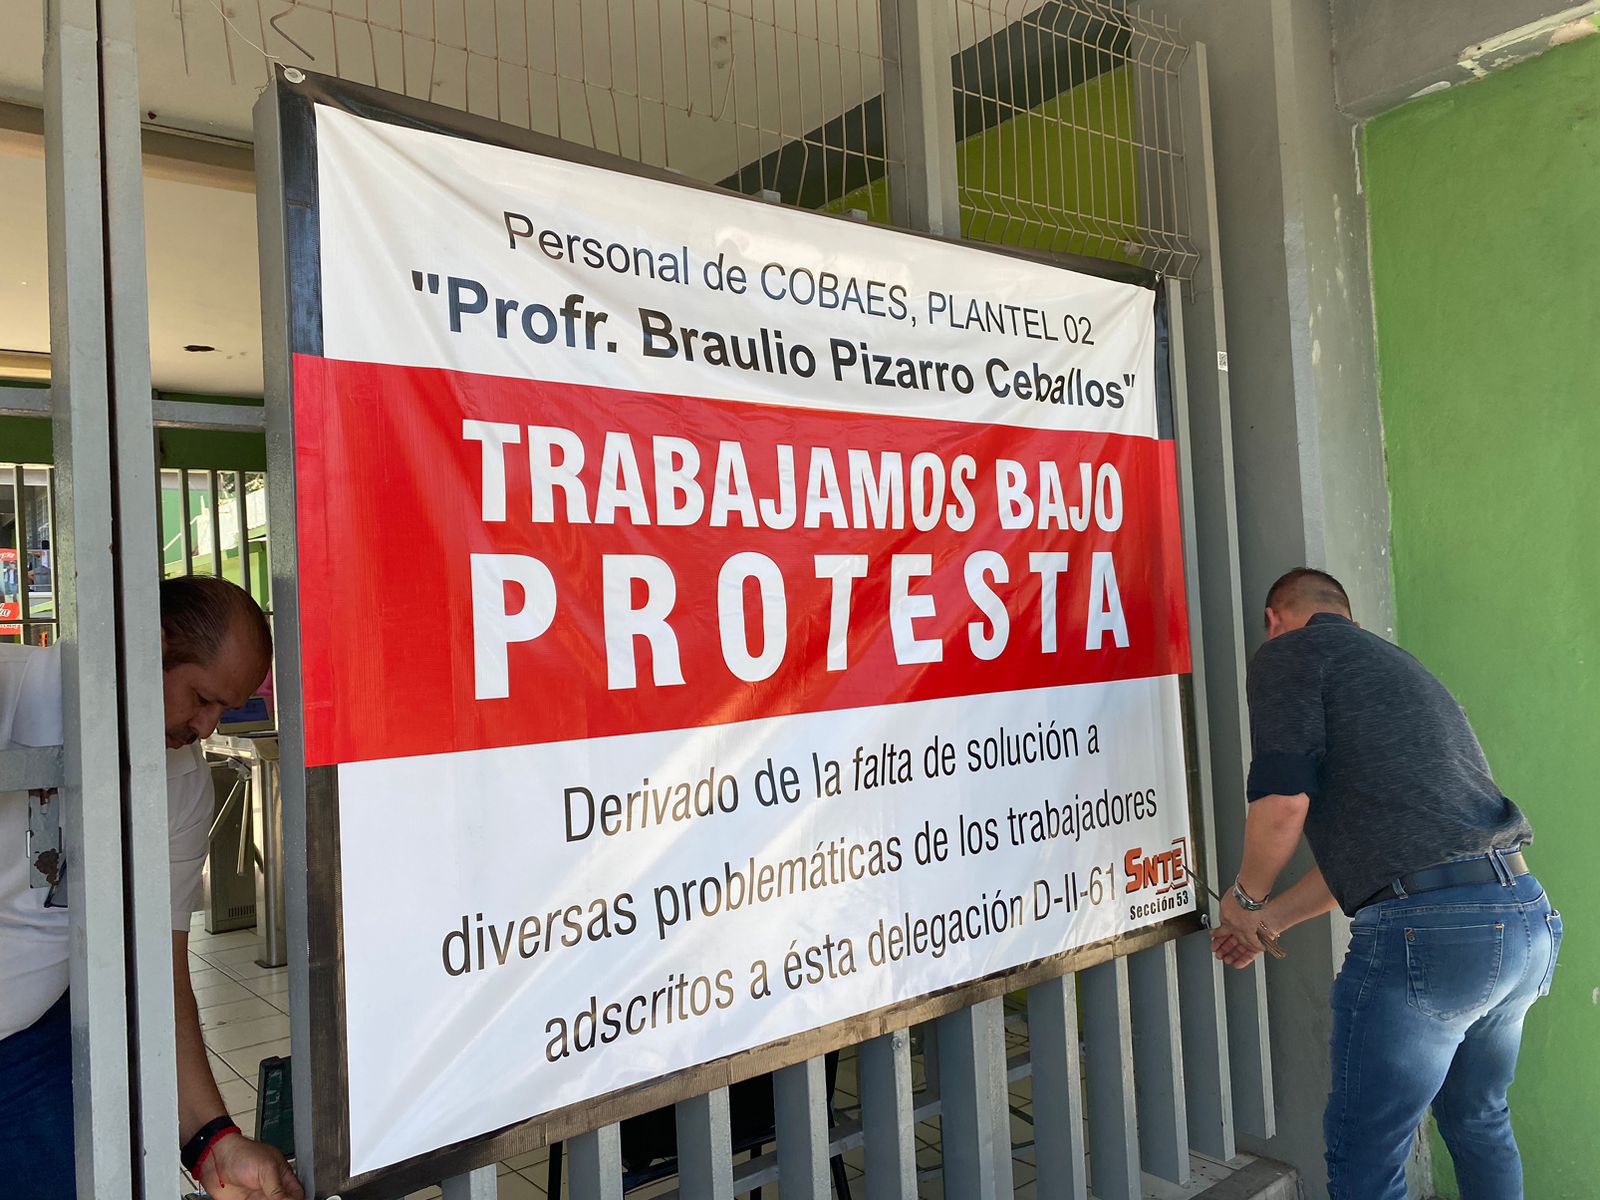 Quitan lonas y pancartas docentes de Cobaes 02 en Los Mochis; laboraban bajo protesta